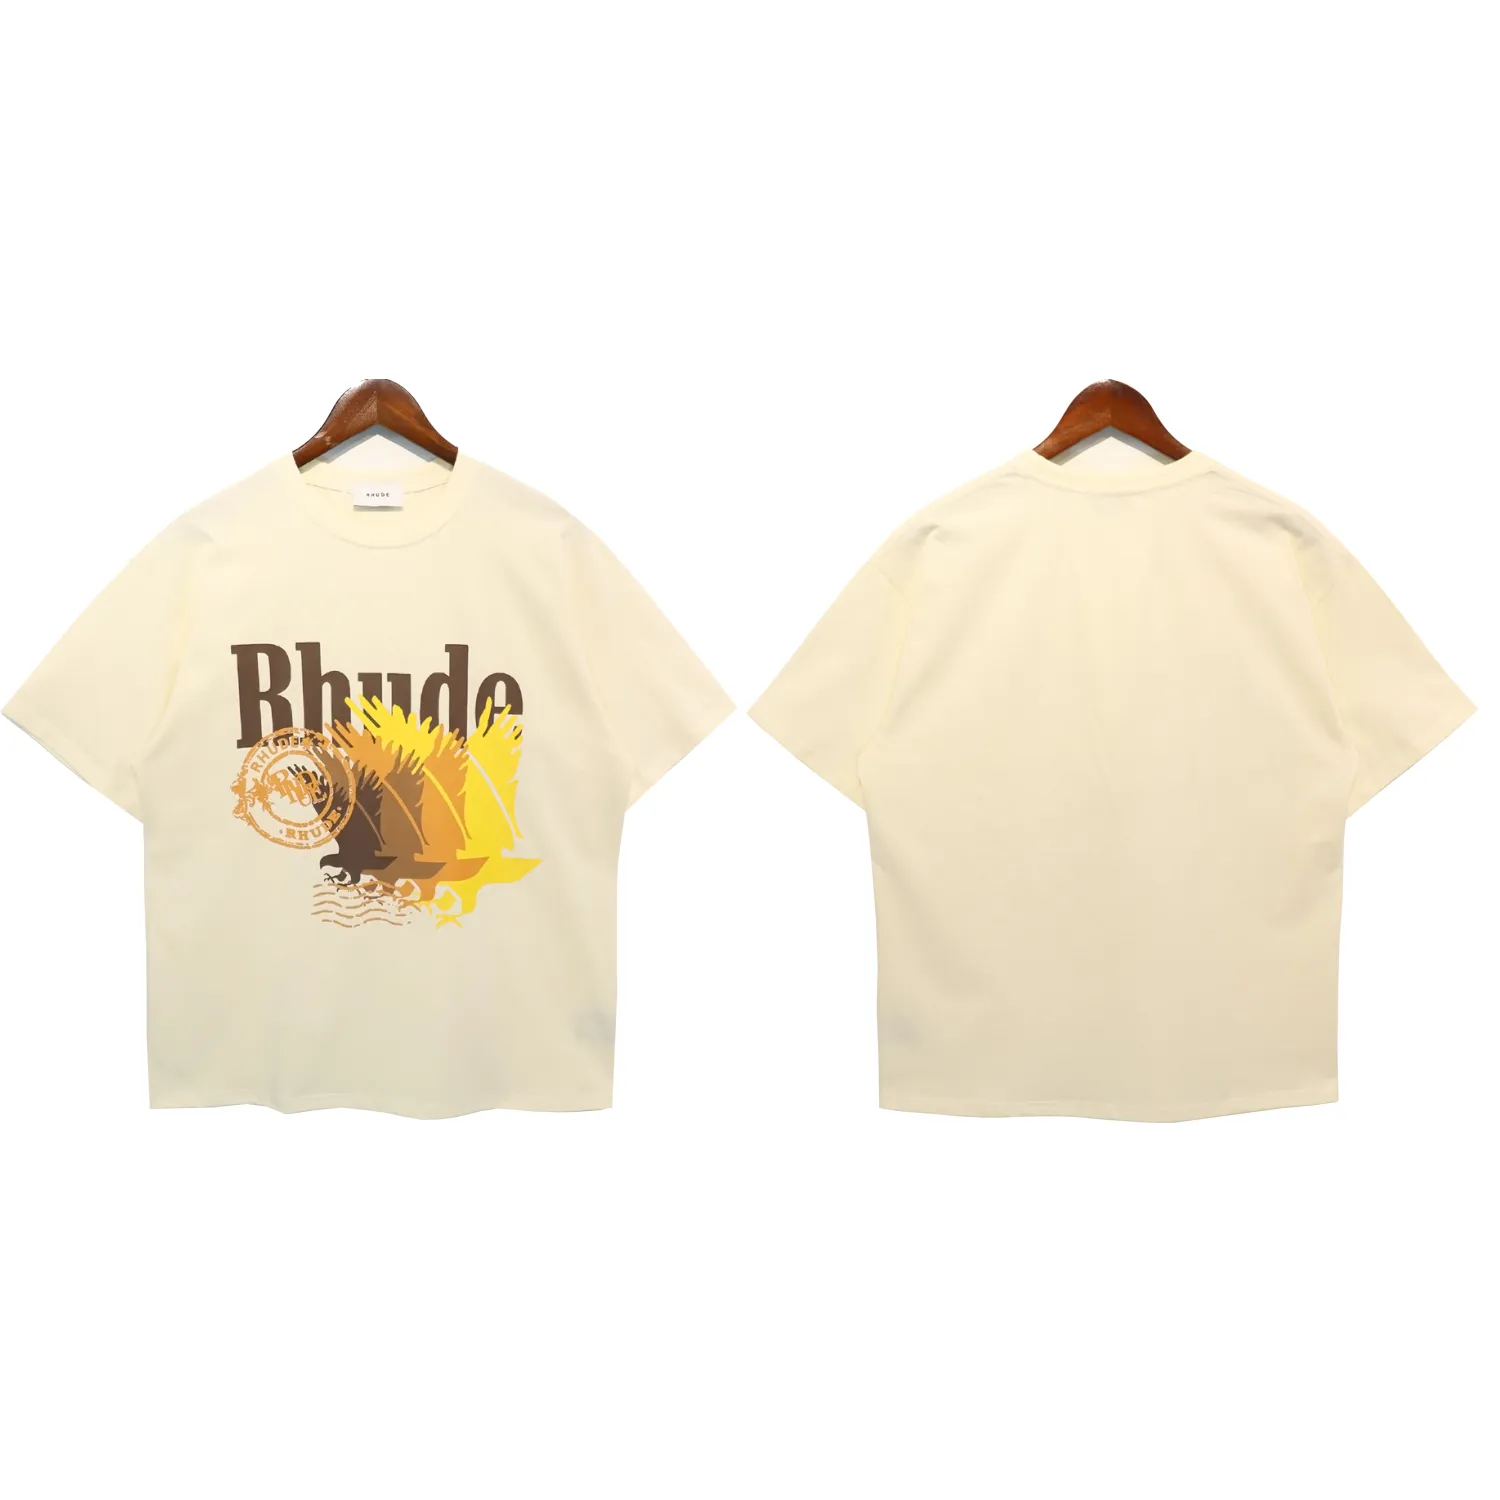 Новая летняя дизайнерская рубашка роскошная футболка Rhud